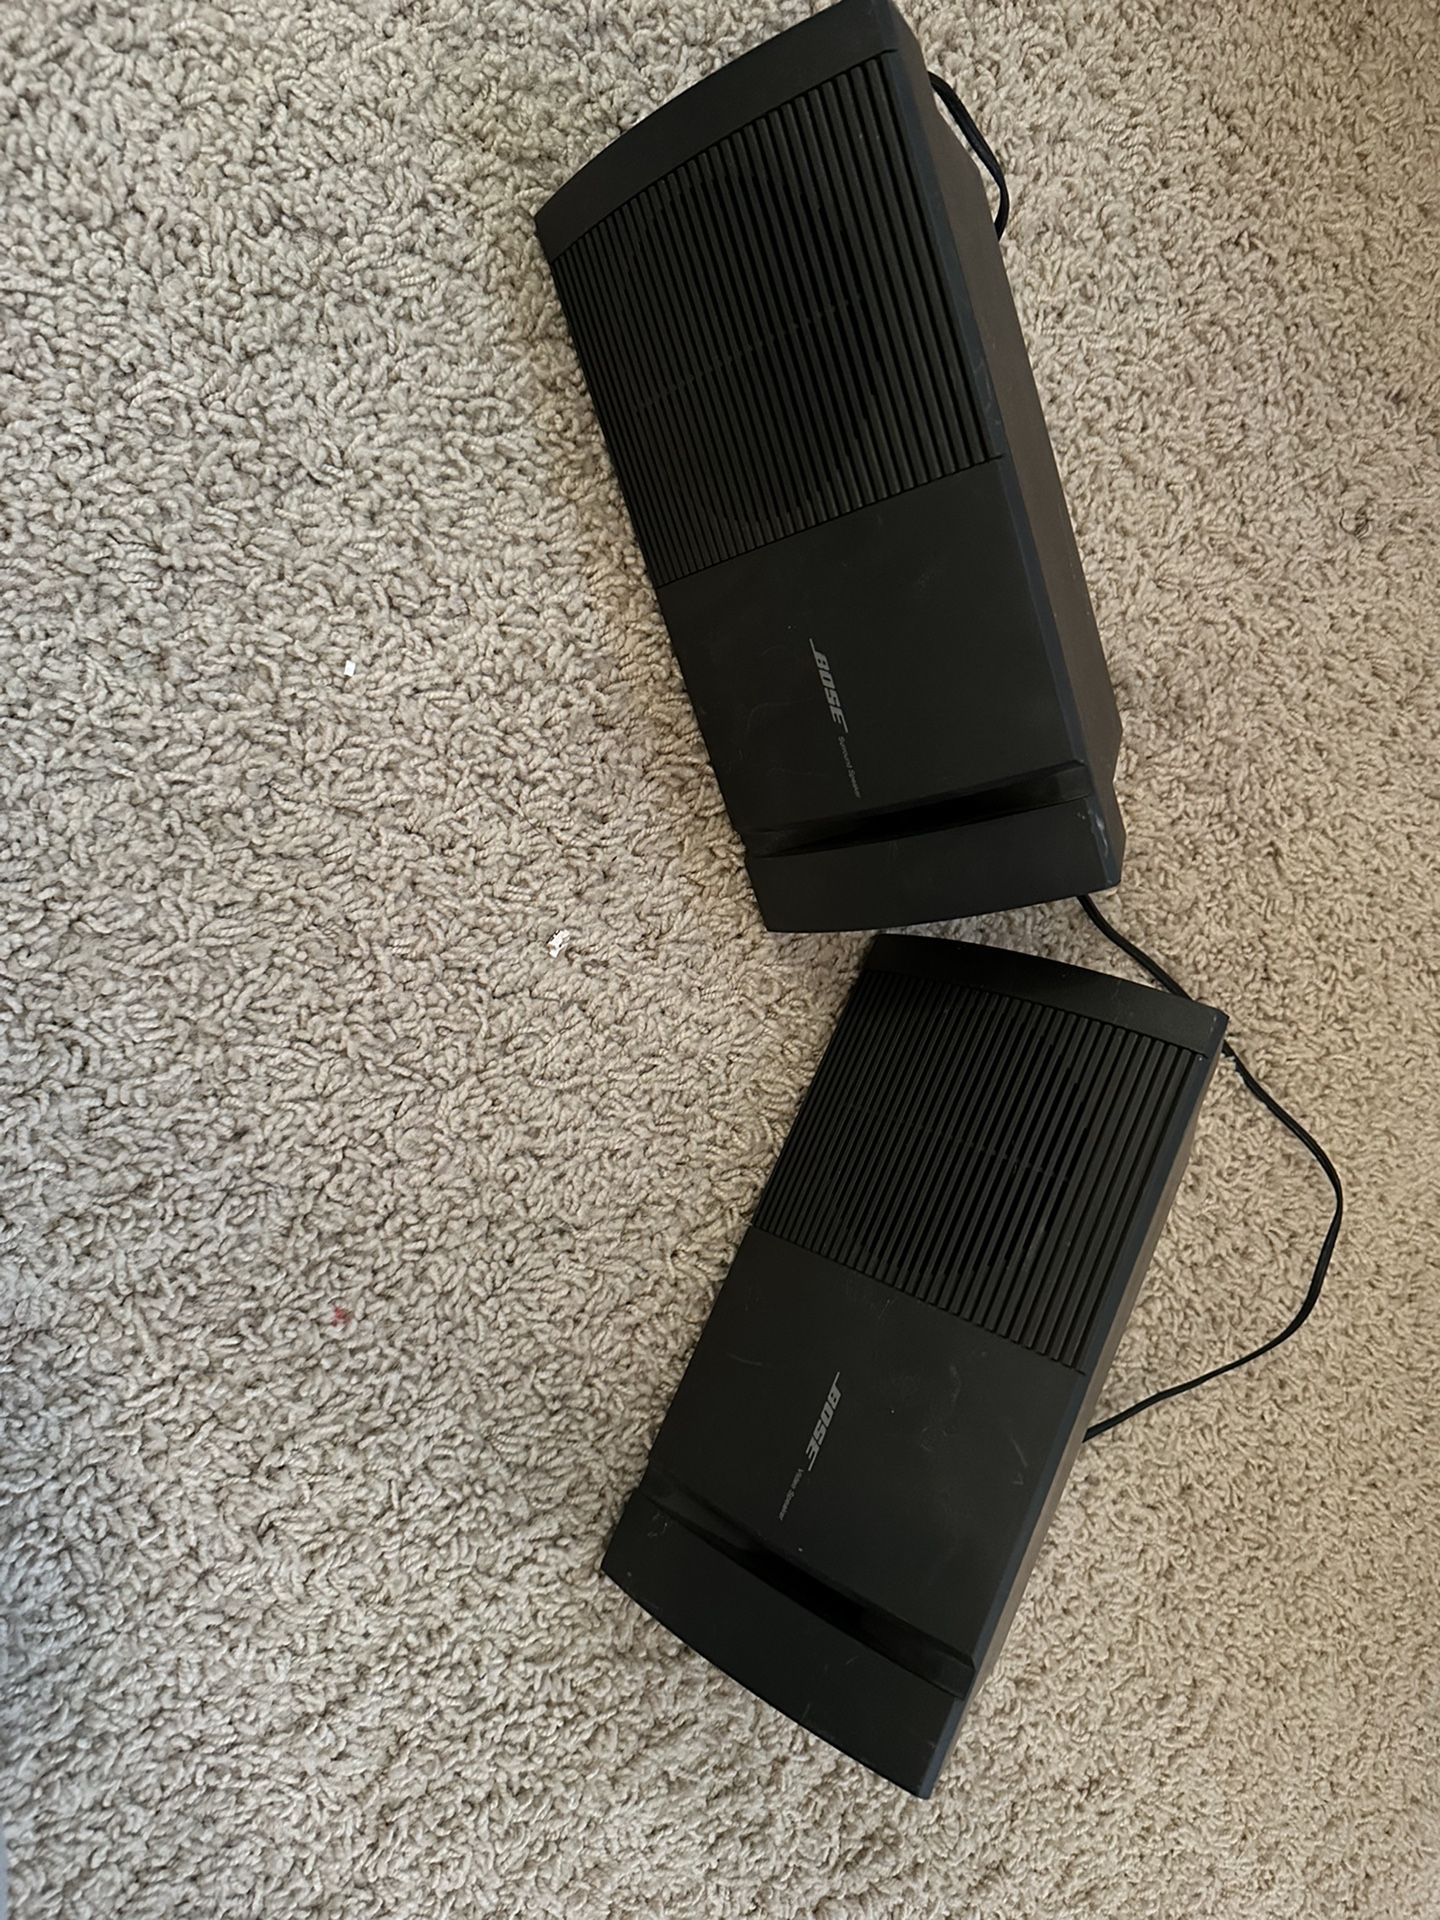 Bose v-100 Video Speaker 